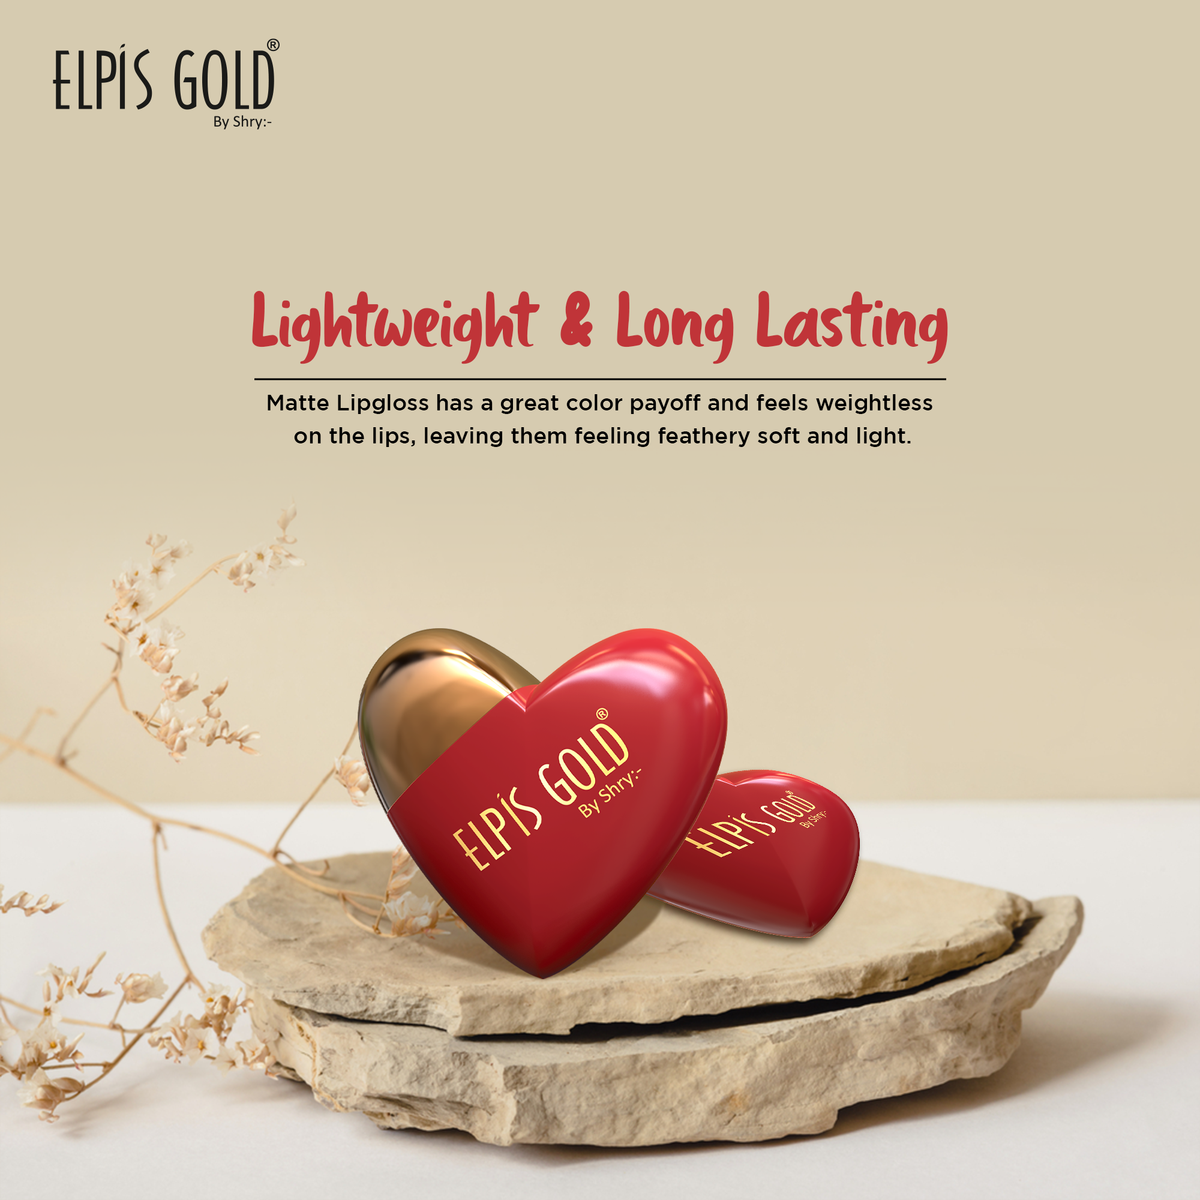 Elpis Gold Heart Matte lipstick